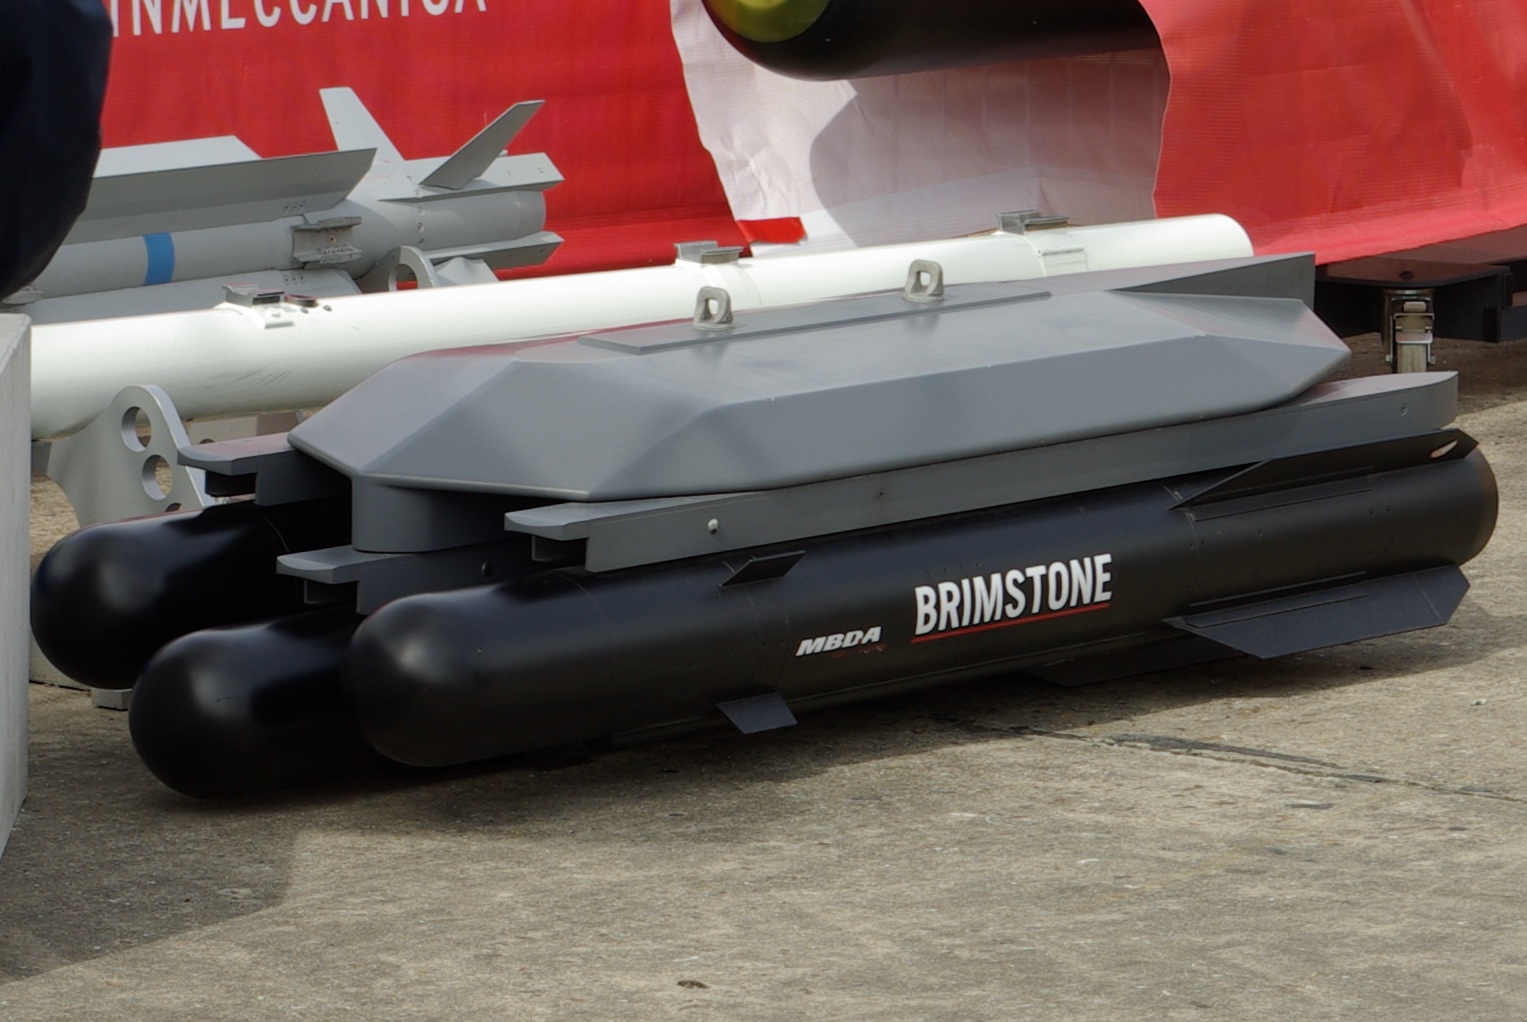 El primer video del lanzamiento de misiles británicos Brimstone en la modificación "tierra a tierra" apareció en línea.